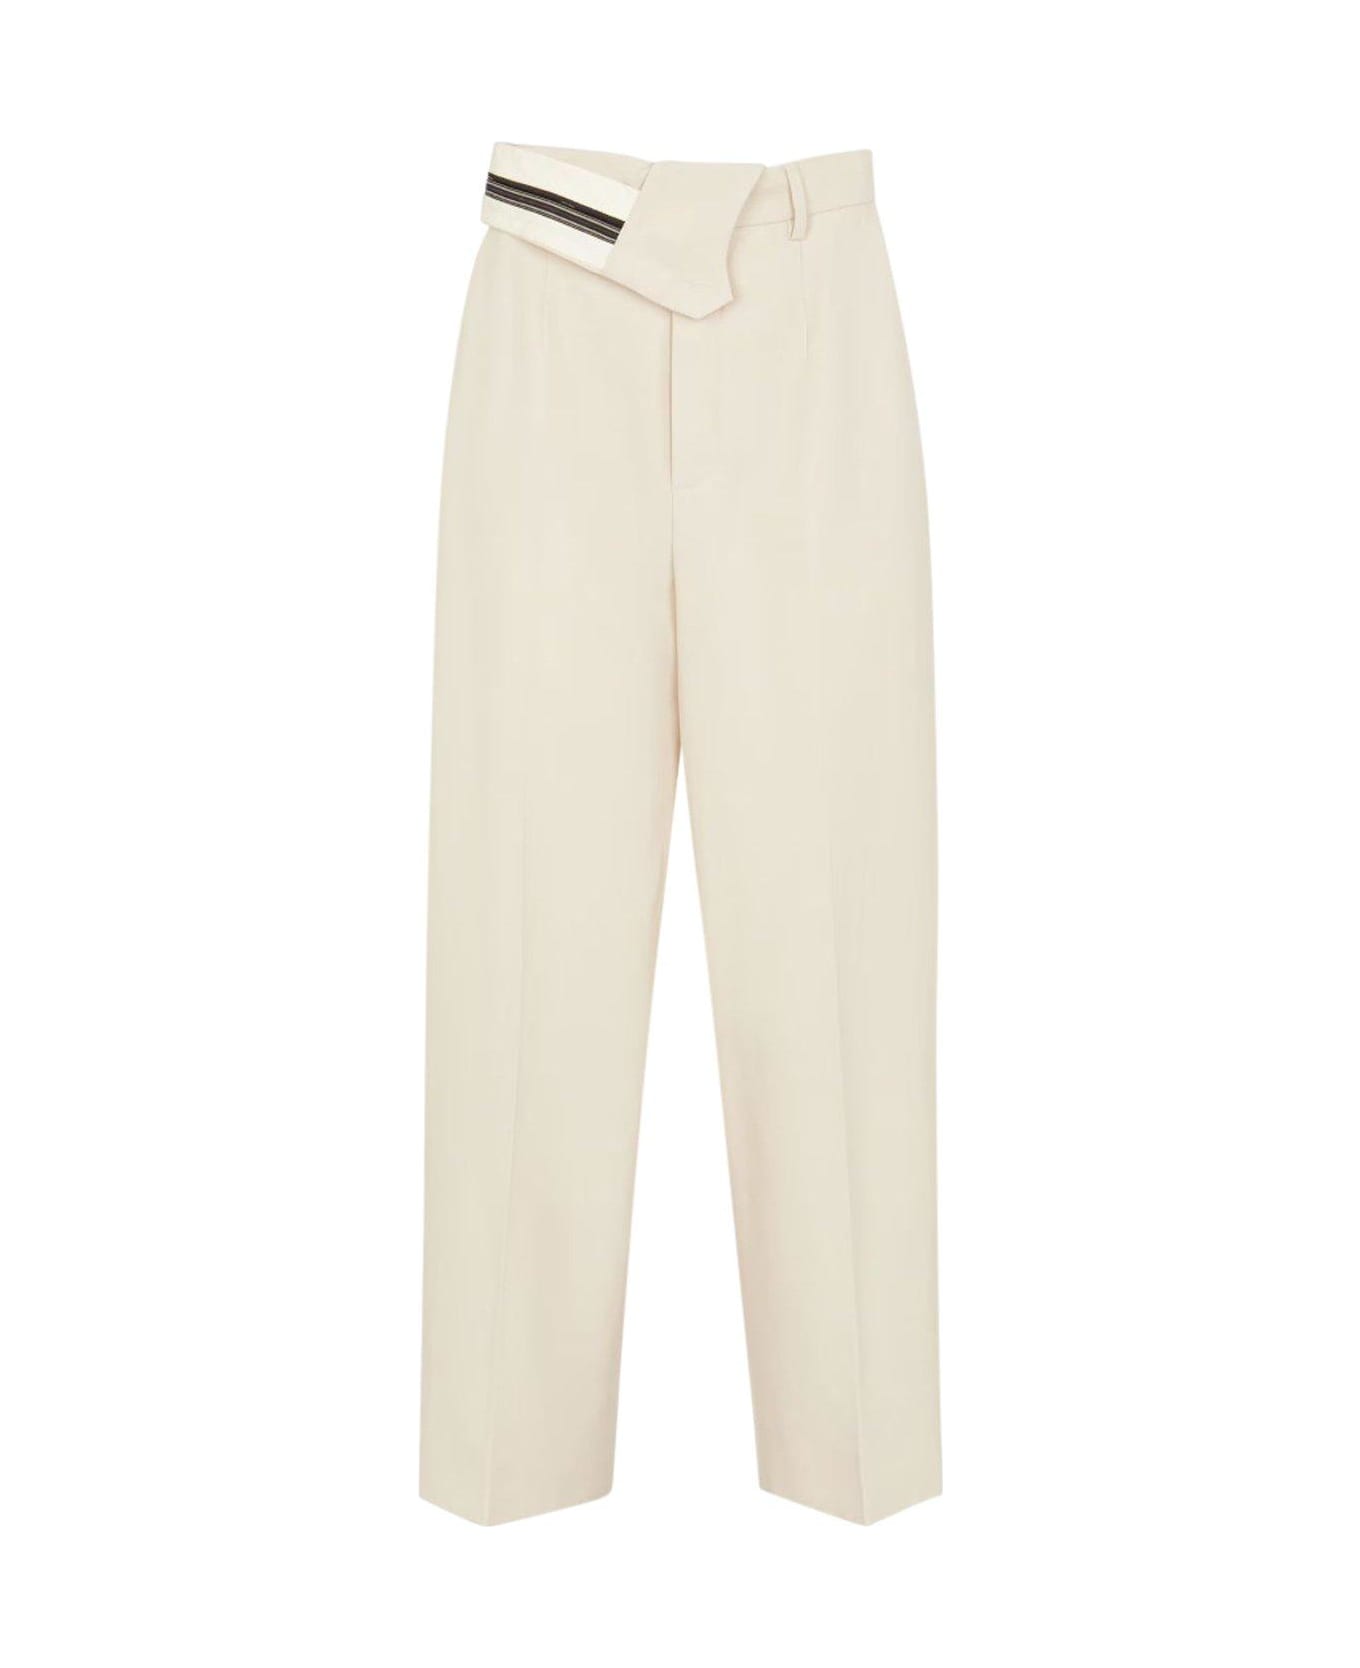 Fendi Pantalone Wool Cotton Trousers - Shell